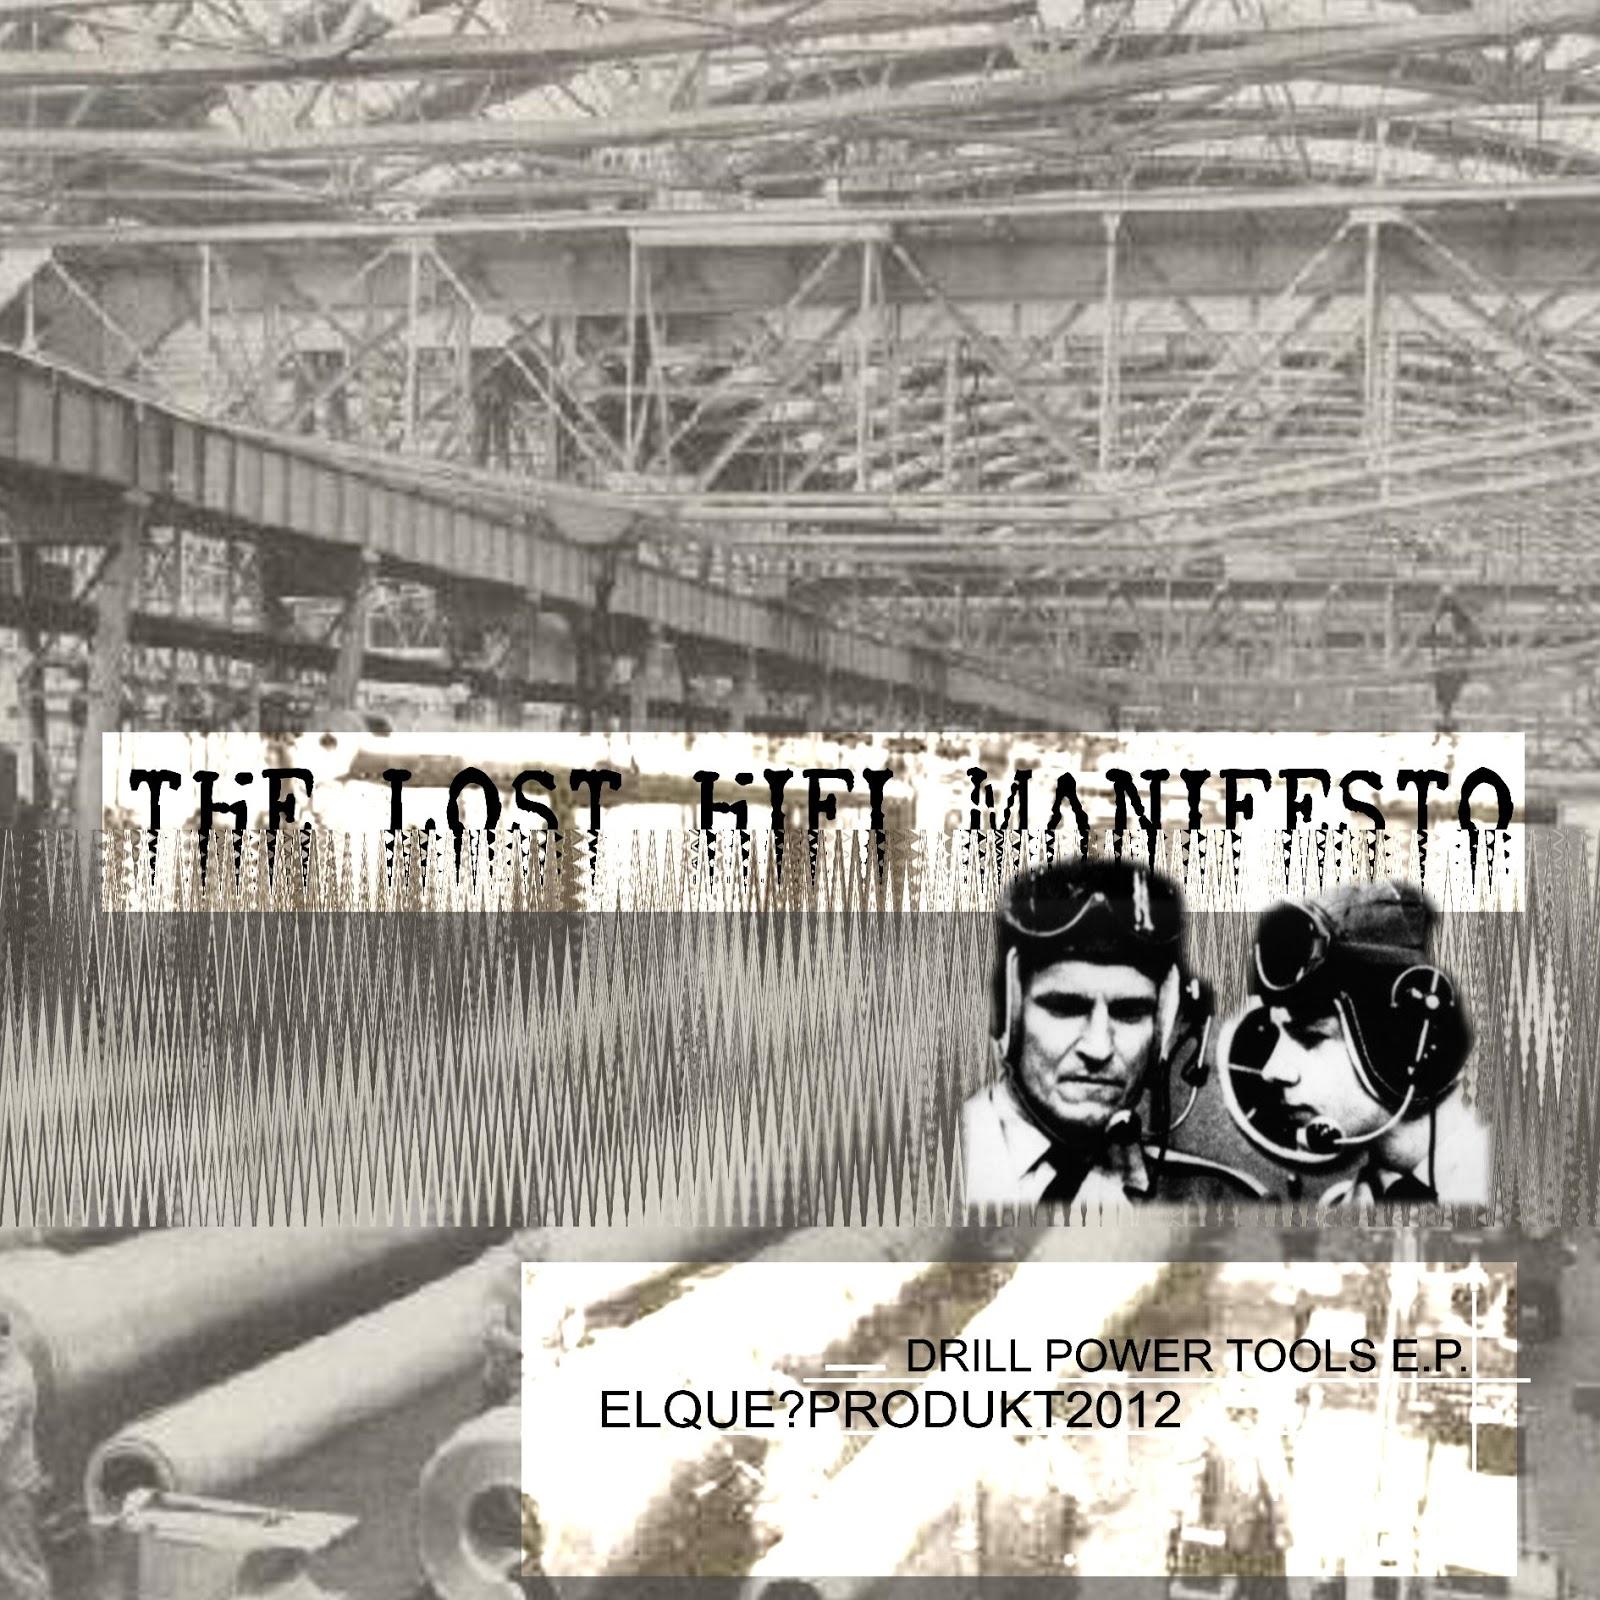 THE LOST HI-FI MANIFESTO - DRILL POWER TOOLS E.P